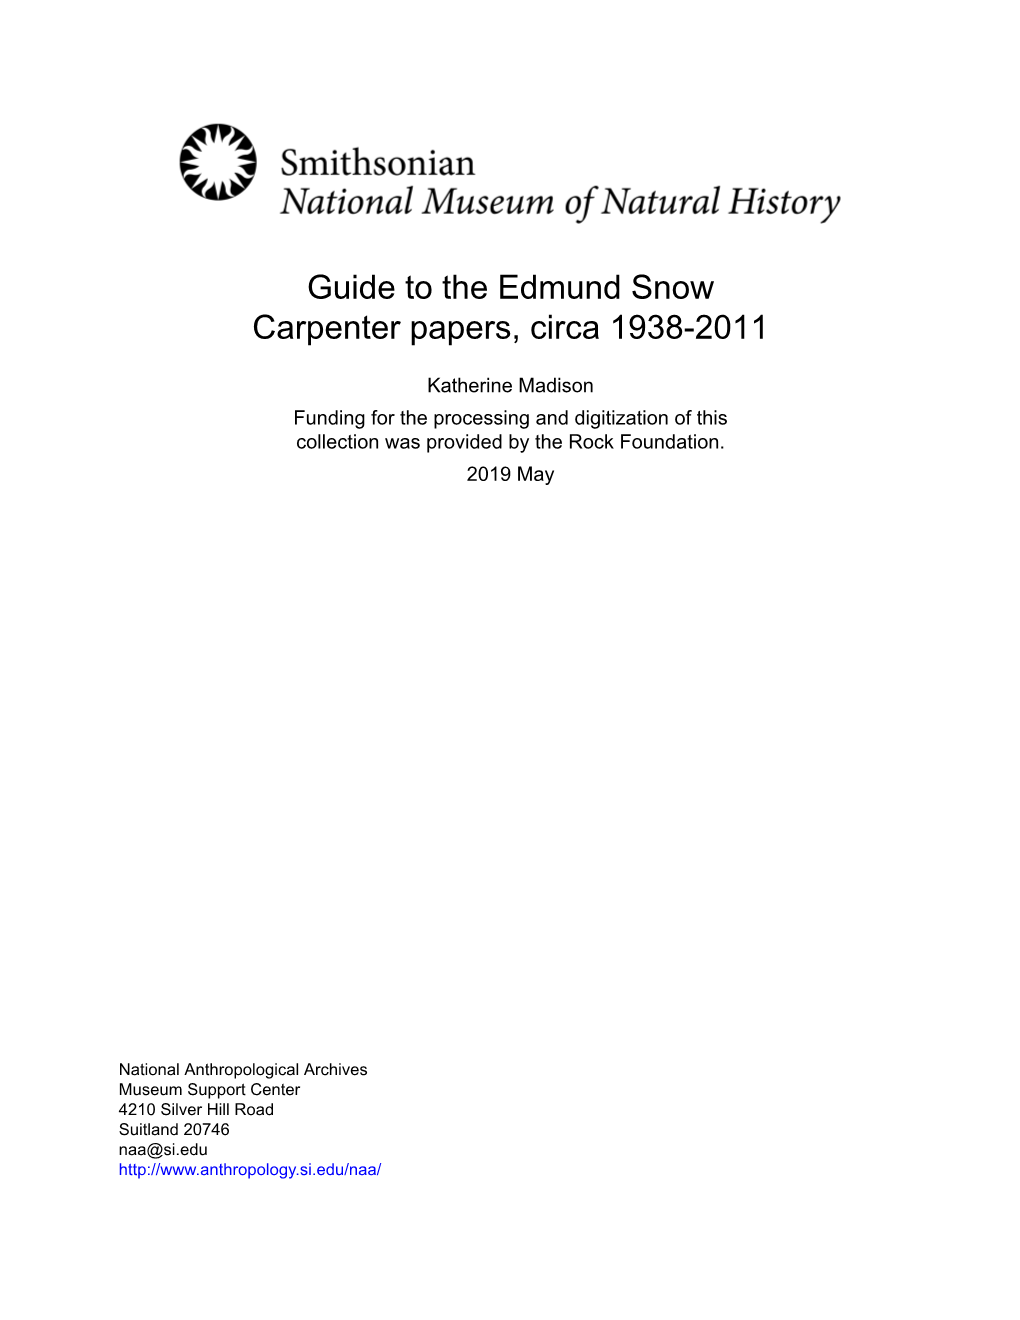 Guide to the Edmund Snow Carpenter Papers, Circa 1938-2011